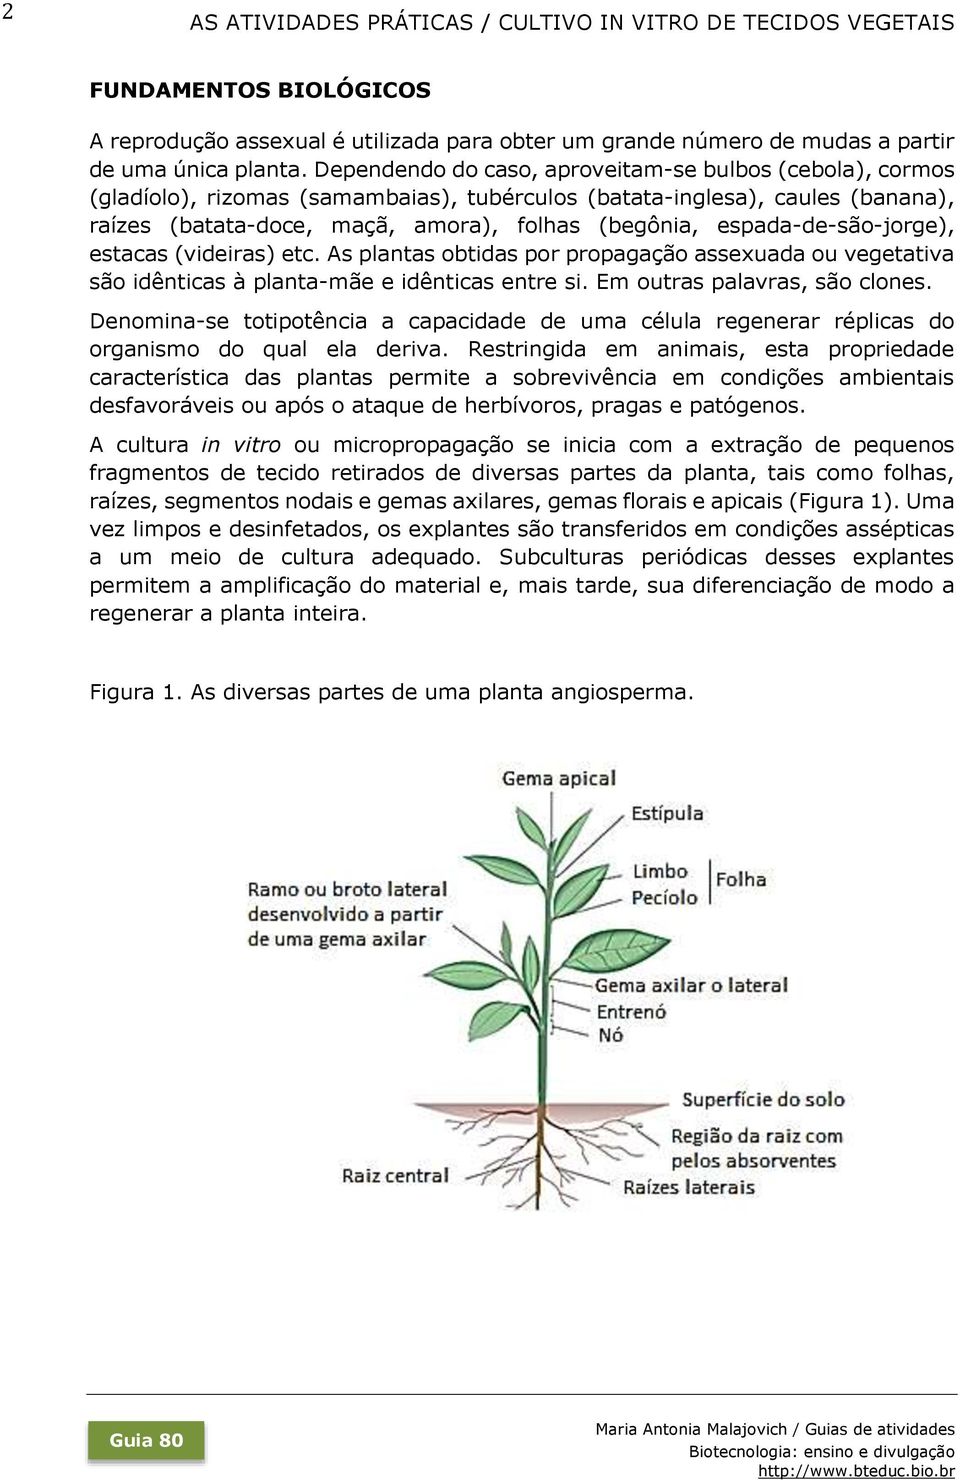 espada-de-são-jorge), estacas (videiras) etc. As plantas obtidas por propagação assexuada ou vegetativa são idênticas à planta-mãe e idênticas entre si. Em outras palavras, são clones.